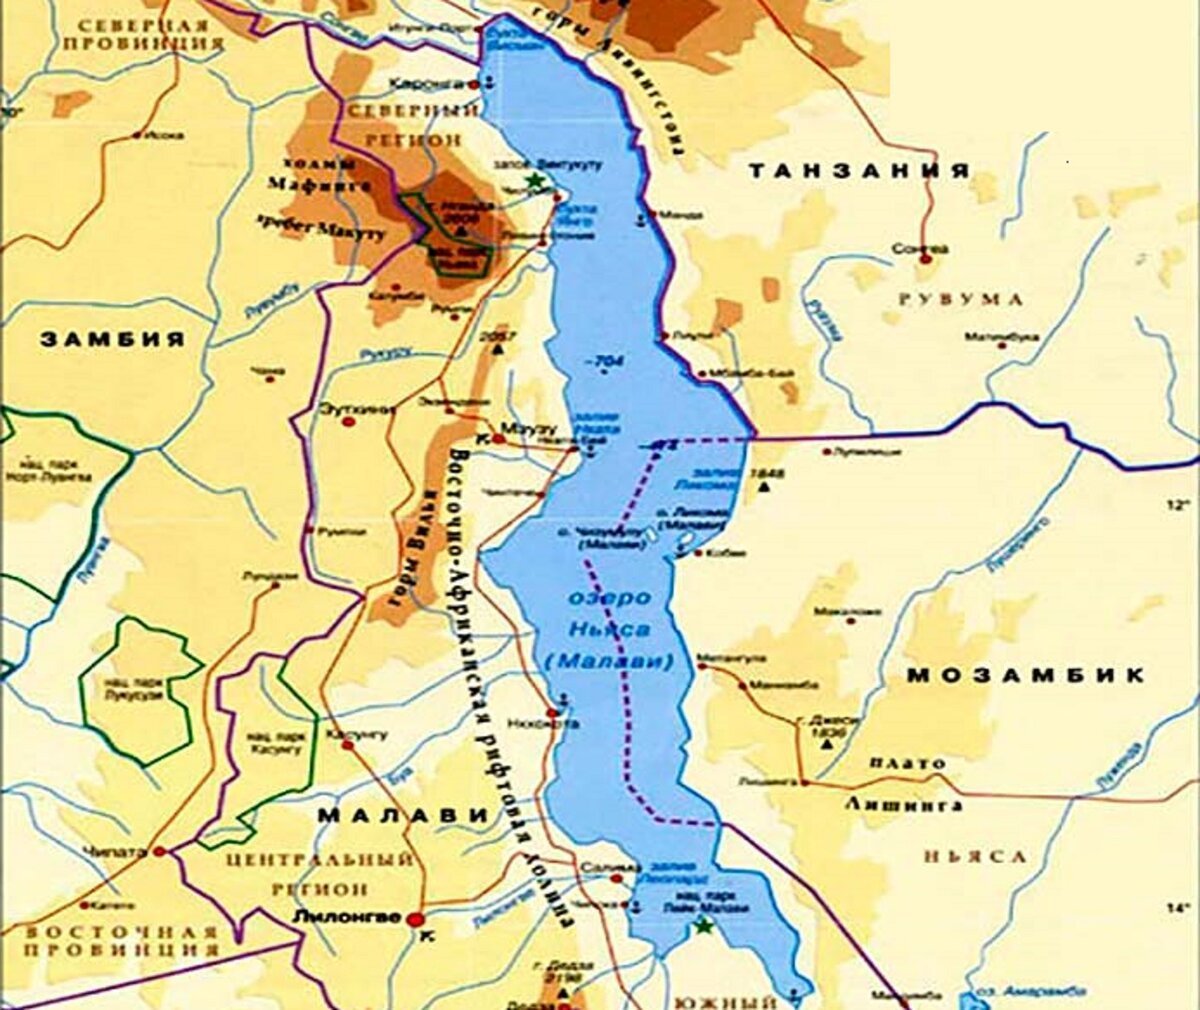 Озеро ньяса расположено. Озера Танганьика и Ньяса на карте Африки. Озеро Ньяса на карте. Озеро Ньяса Малави. Где находится озеро Ньяса на карте Африки.